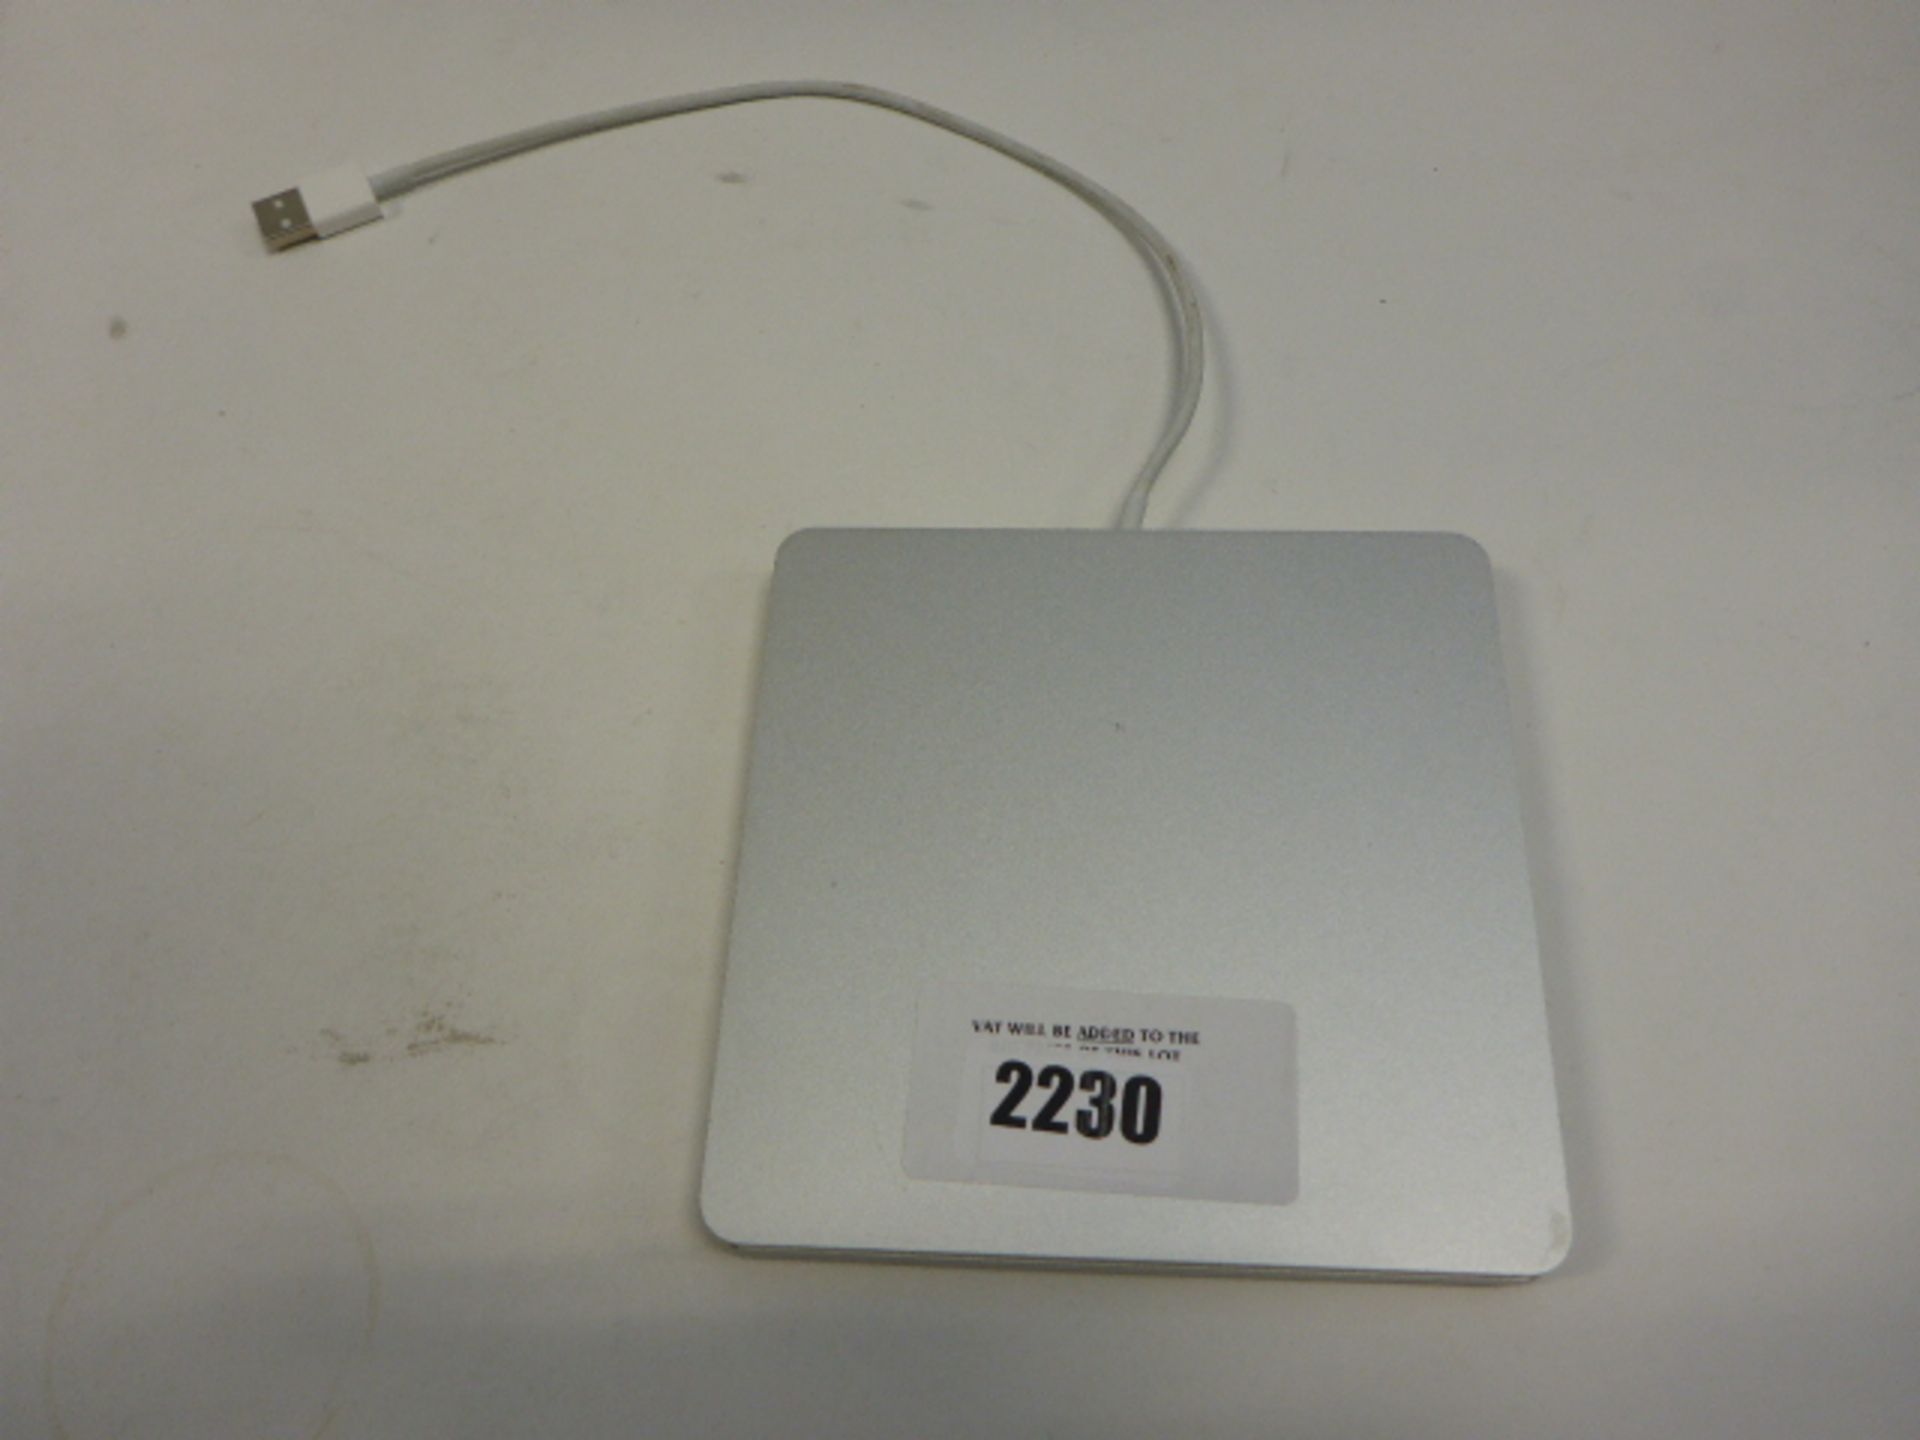 Apple external CD drive A1379